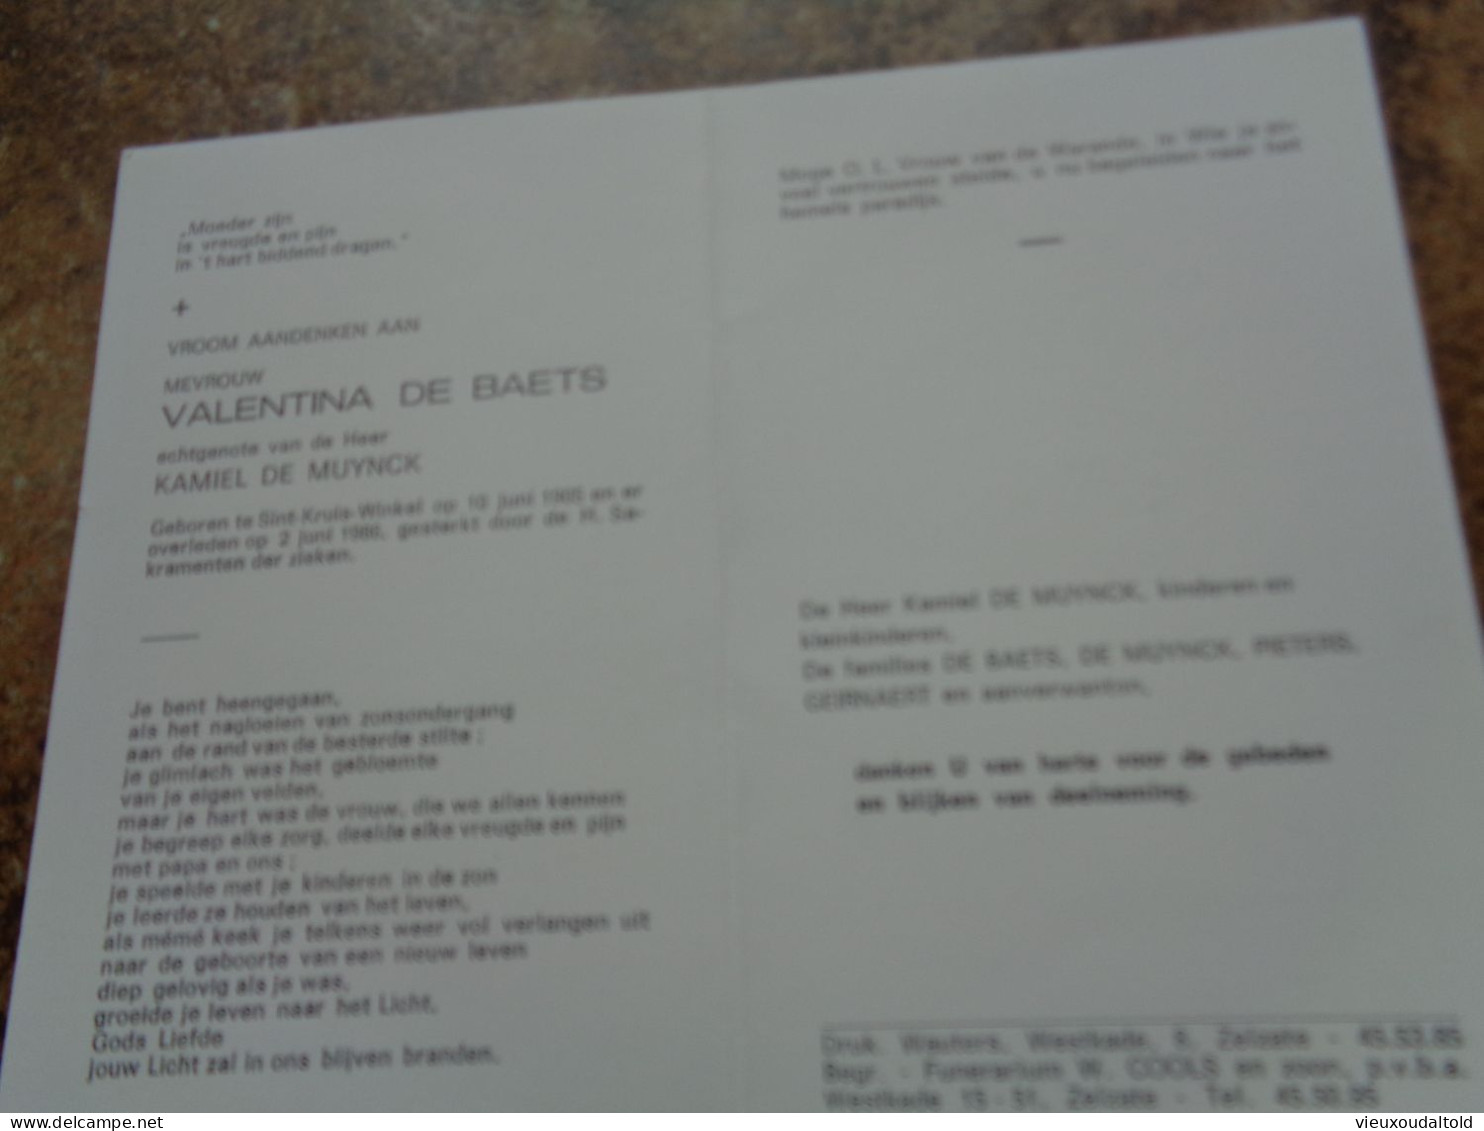 Doodsprentje/Bidprentje  VALENTINA DE BAETS   St Kruis Winkel 1905-1986  (Echtg Kamiel DE MUYNCK) - Godsdienst & Esoterisme